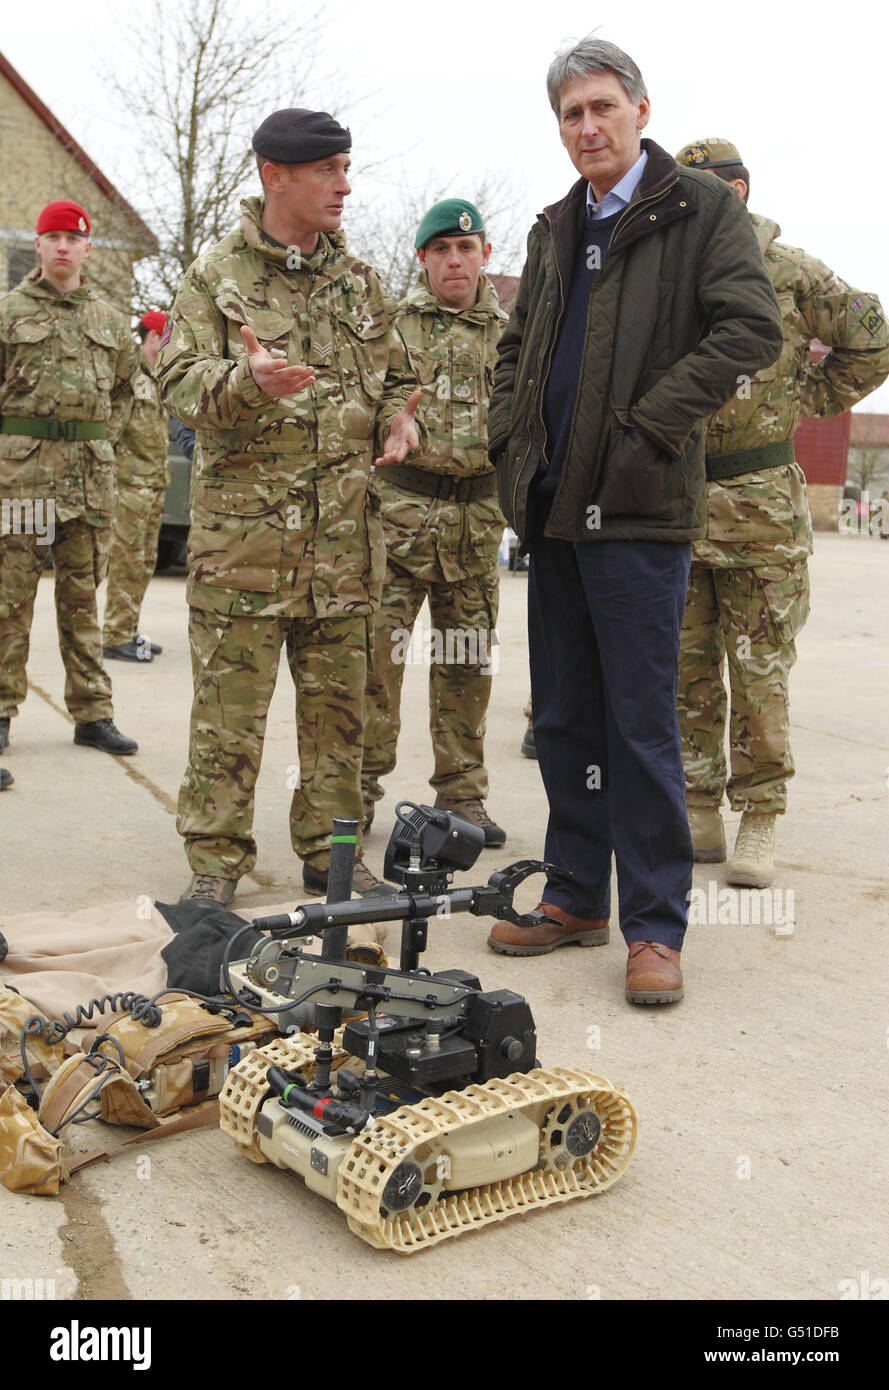 Philip Hammond, secrétaire à la Défense, a présenté de l'équipement pour désamorcer des engins explosifs improvisés lors d'une visite à Copehill Down, une zone d'entraînement du ministère de la Défense dans le Wiltshire. Banque D'Images